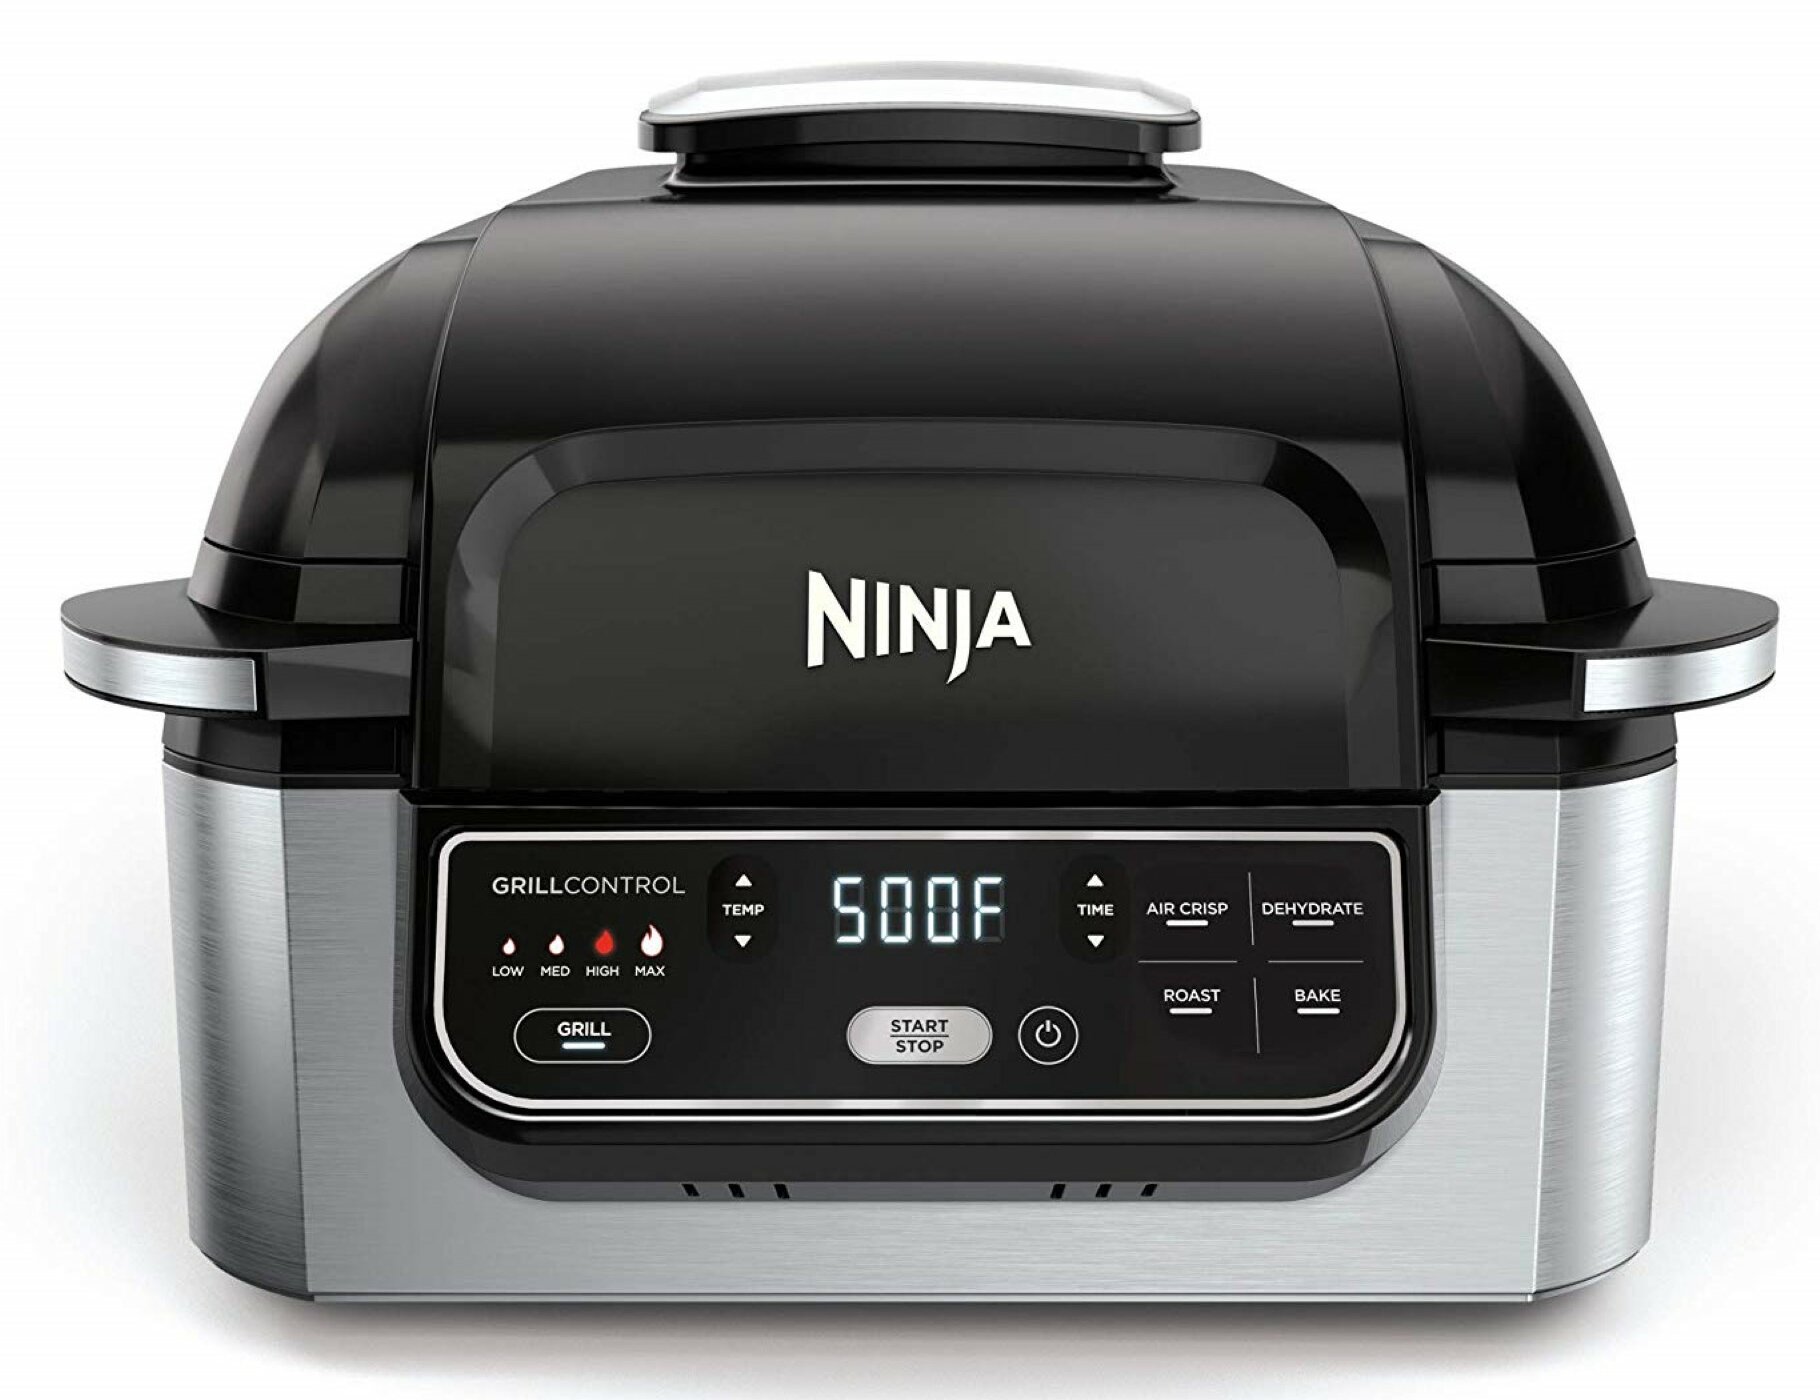 Ninja Foodi 6-in-1 Indoor Grill & Air Fryer Plus Broil, Bake, Roast &  Dehydrate